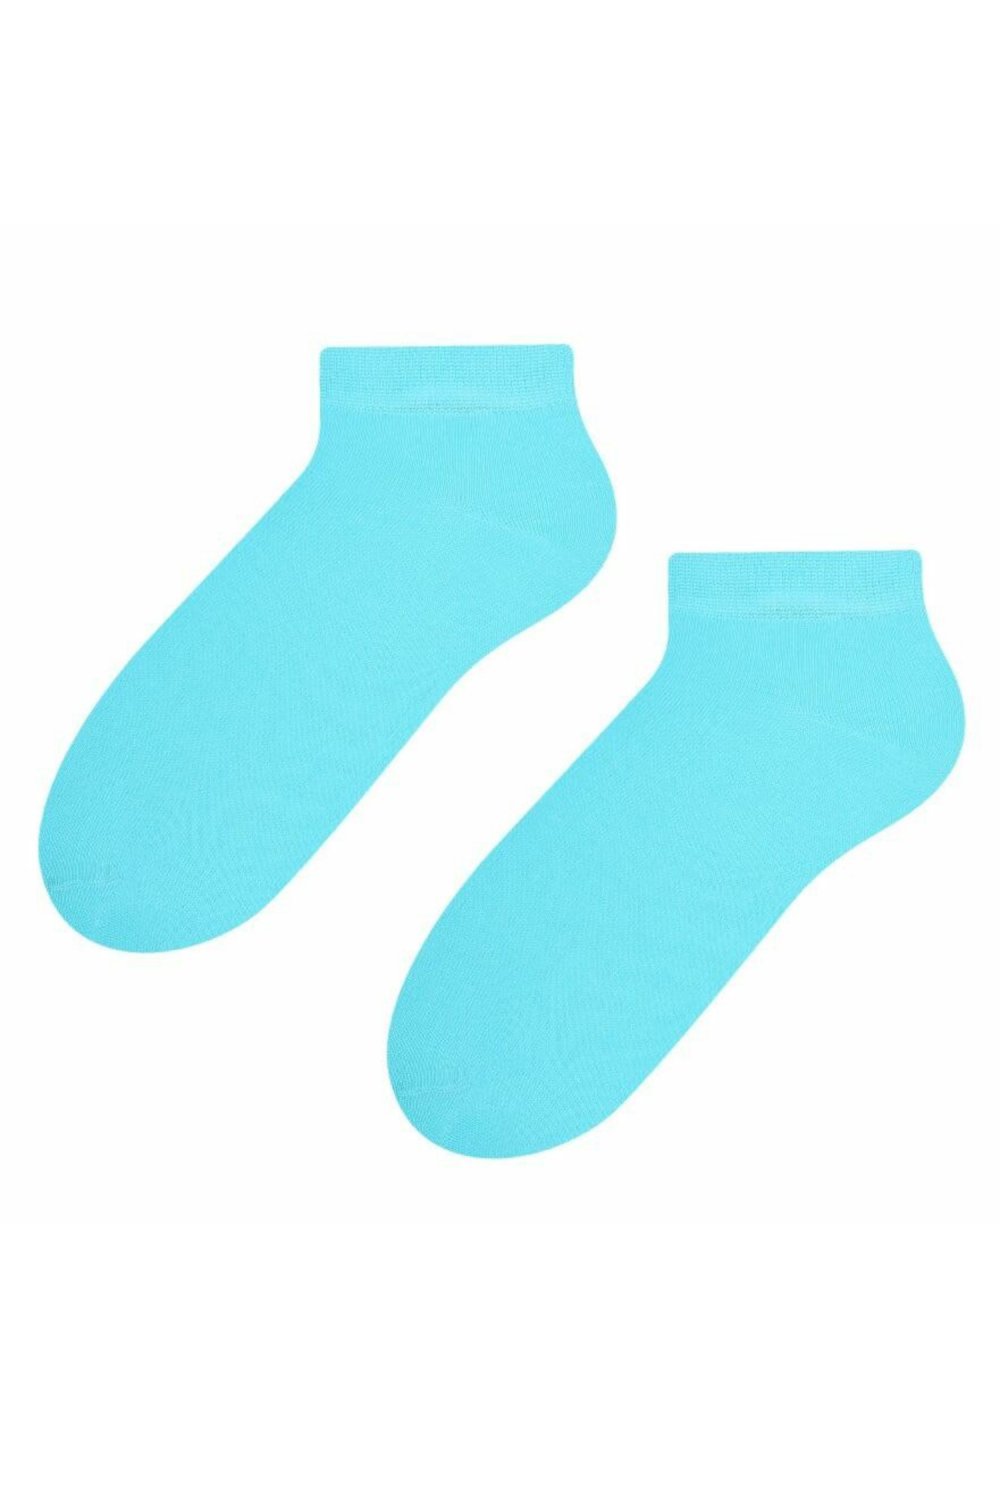 Șosete și ciorapi de damă 052 turquoise